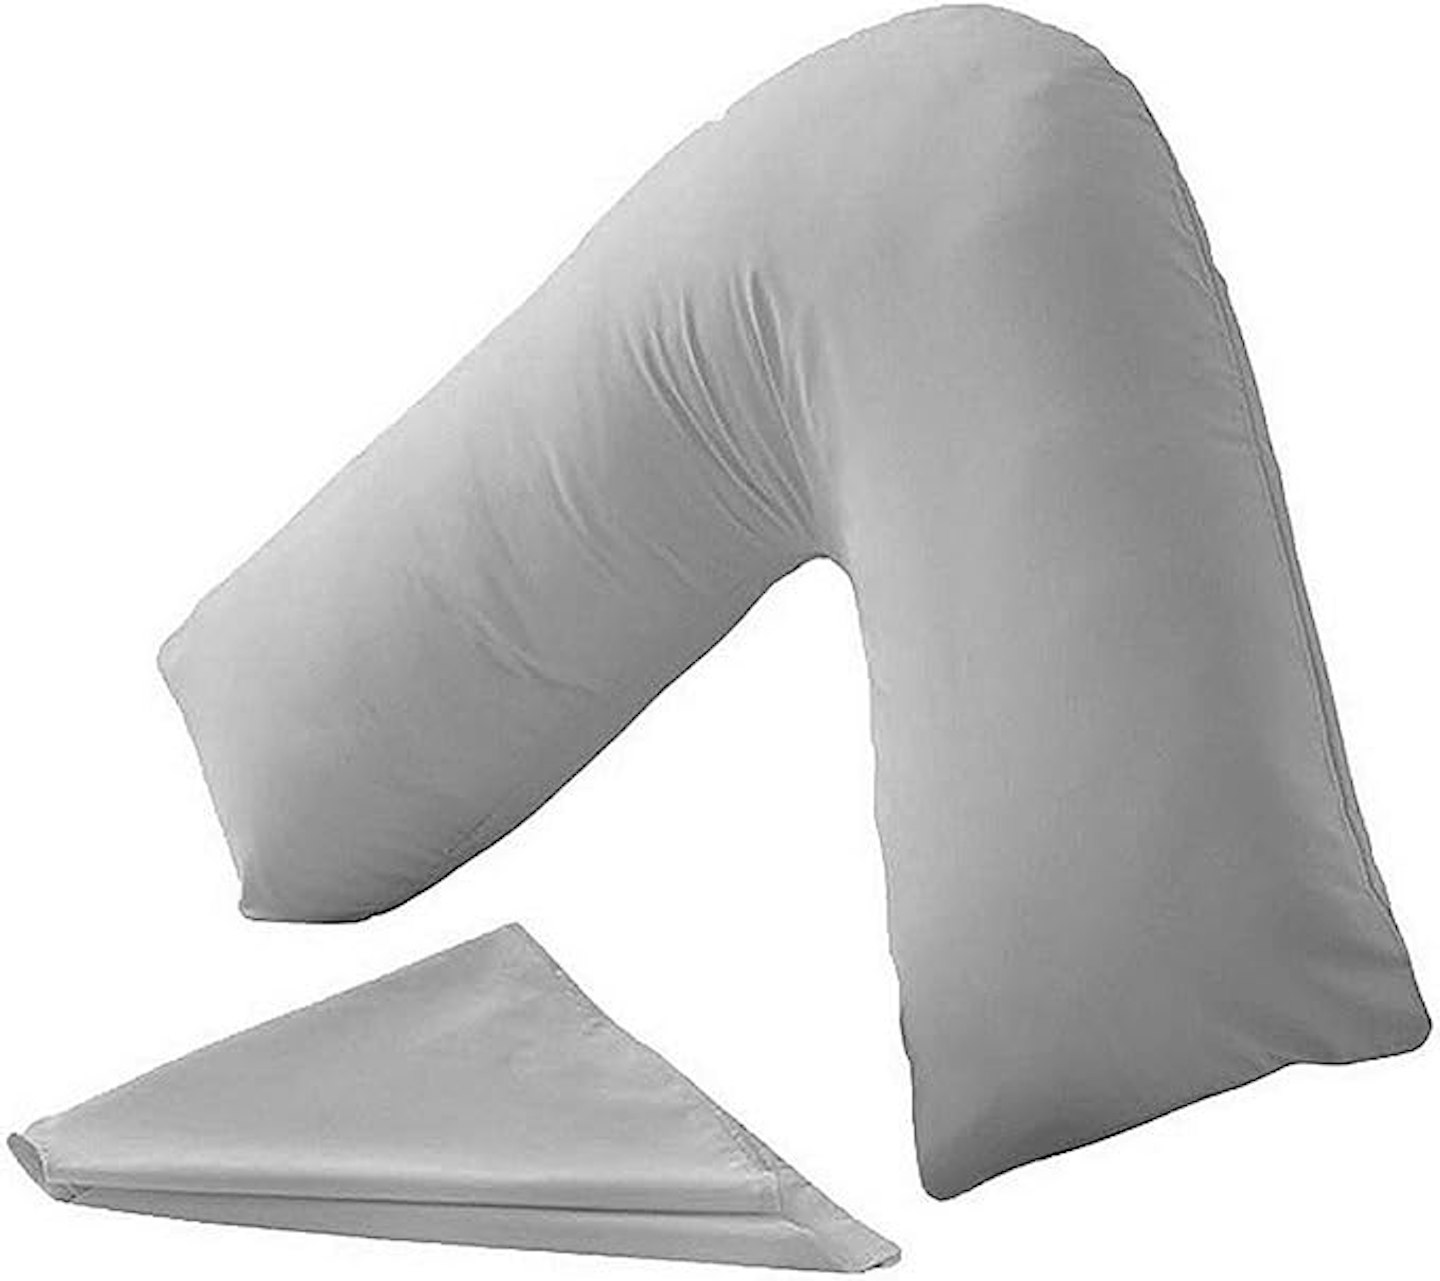 V-shape pillowcases